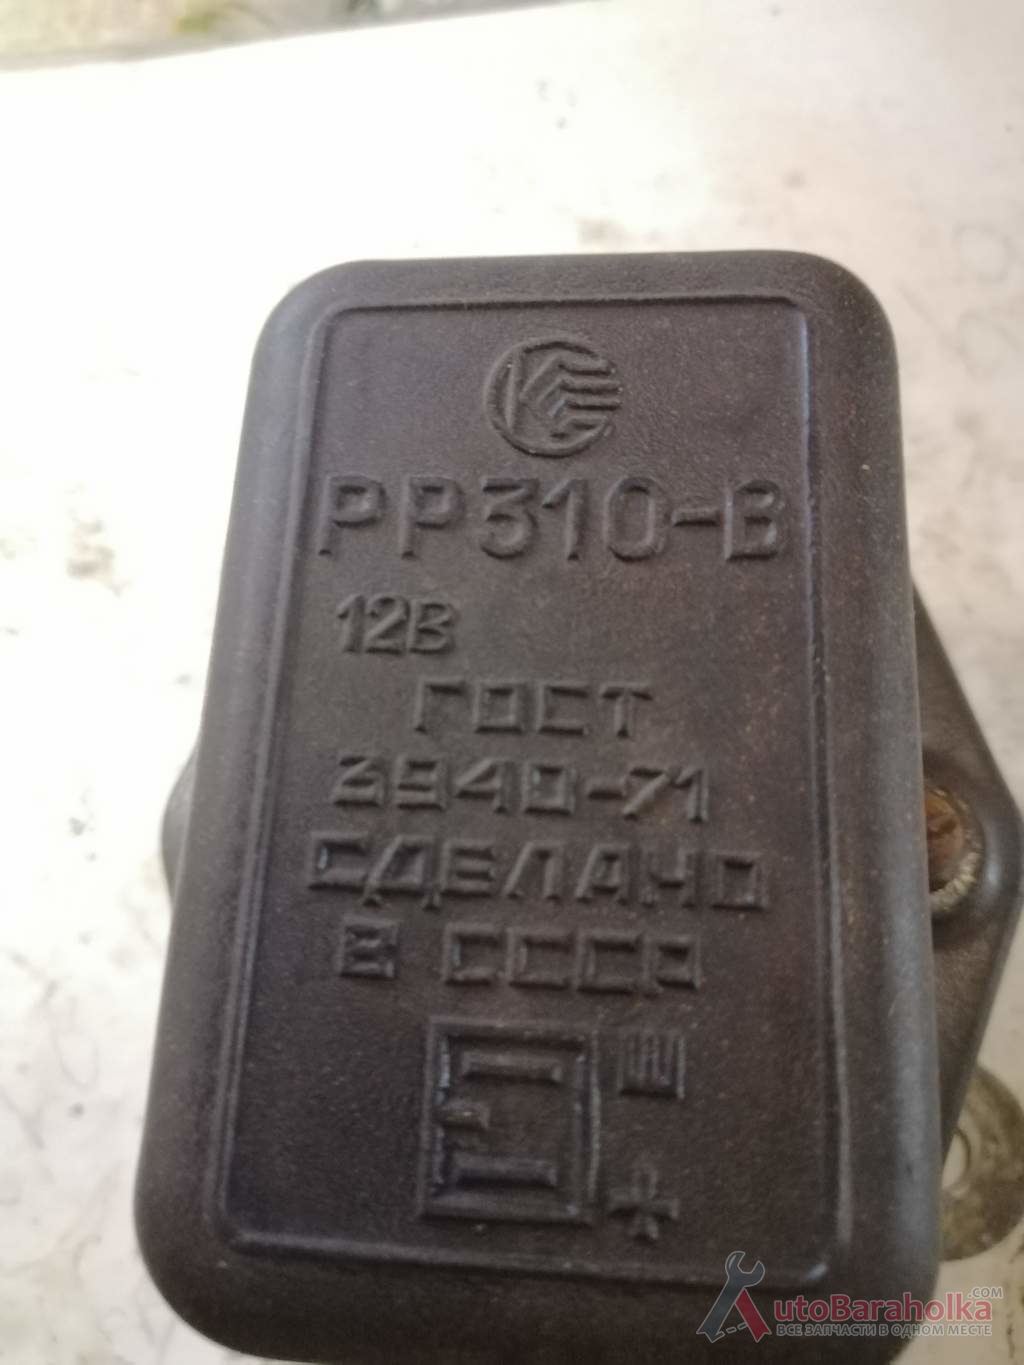 Продам Реле зарядки жук а06-07 б. у Днепропетровская область